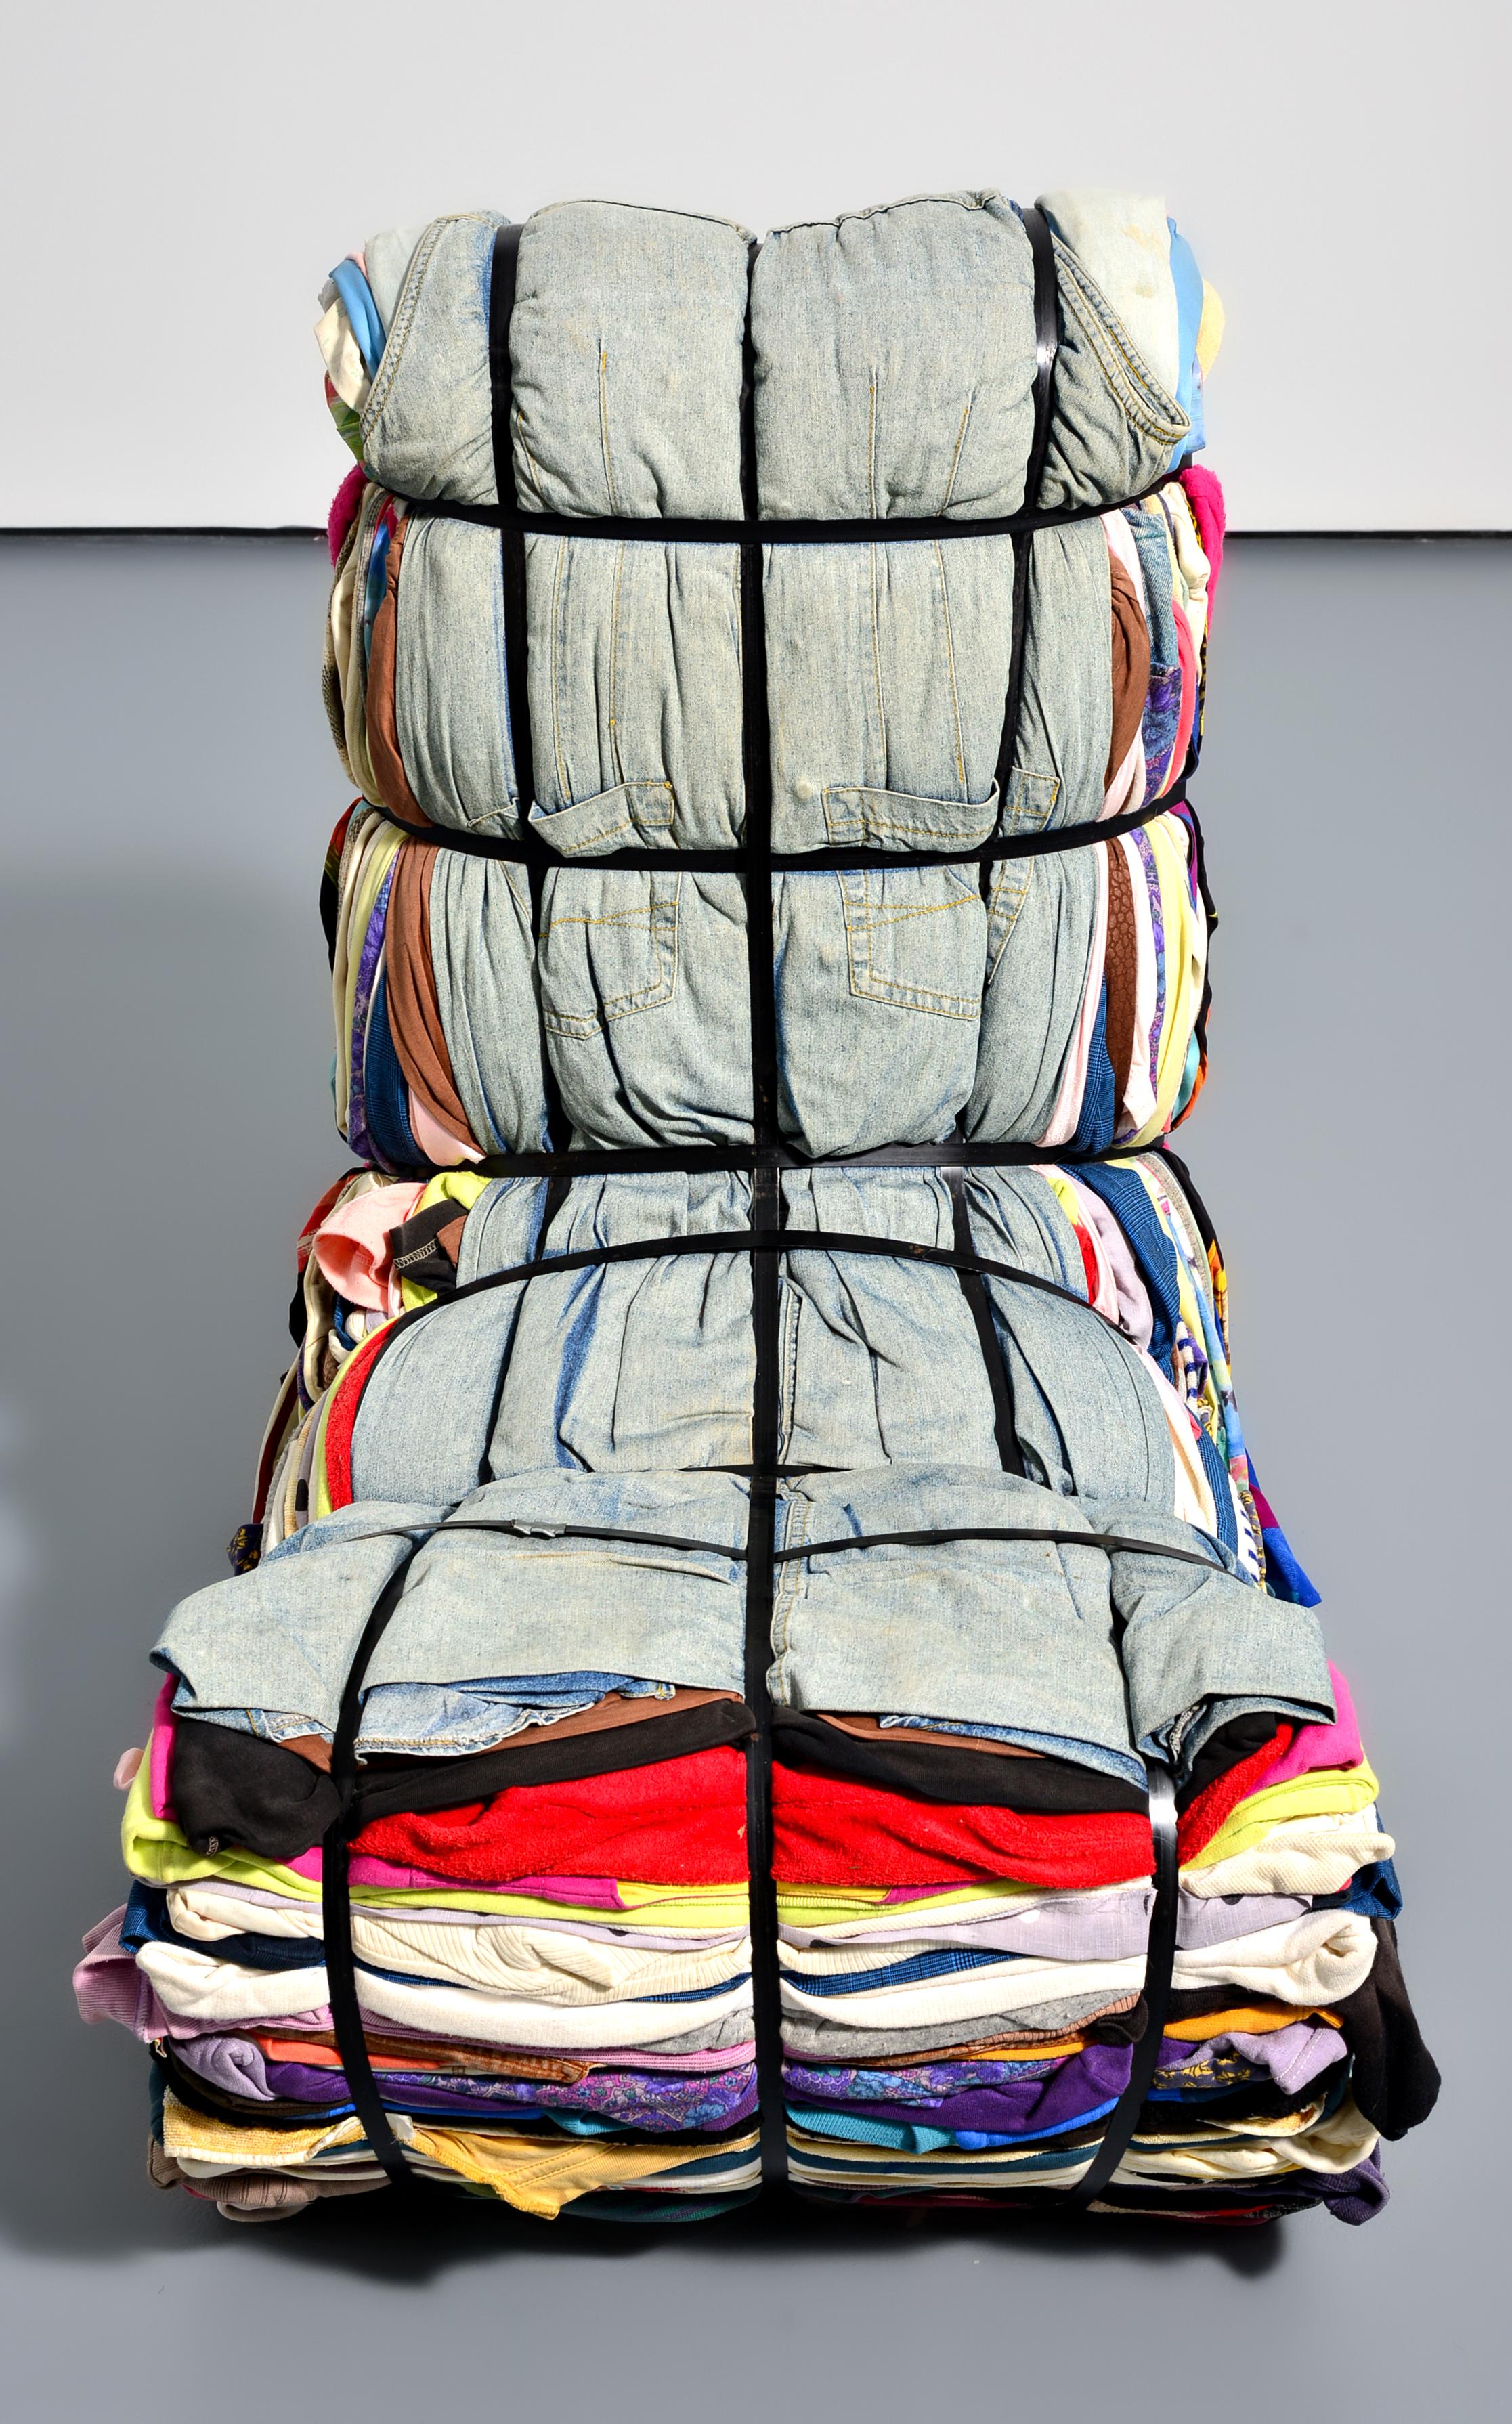 Artistics/Designer : Tejo Remy (Néerlandais, né en 1960)

Informations complémentaires : Chaque chaise en chiffon est unique.

Marquage(s) ; notes : pas de marquage(s) apparent(s)

Pays d'origine ; matériaux : Pays-Bas ; textiles, bois,